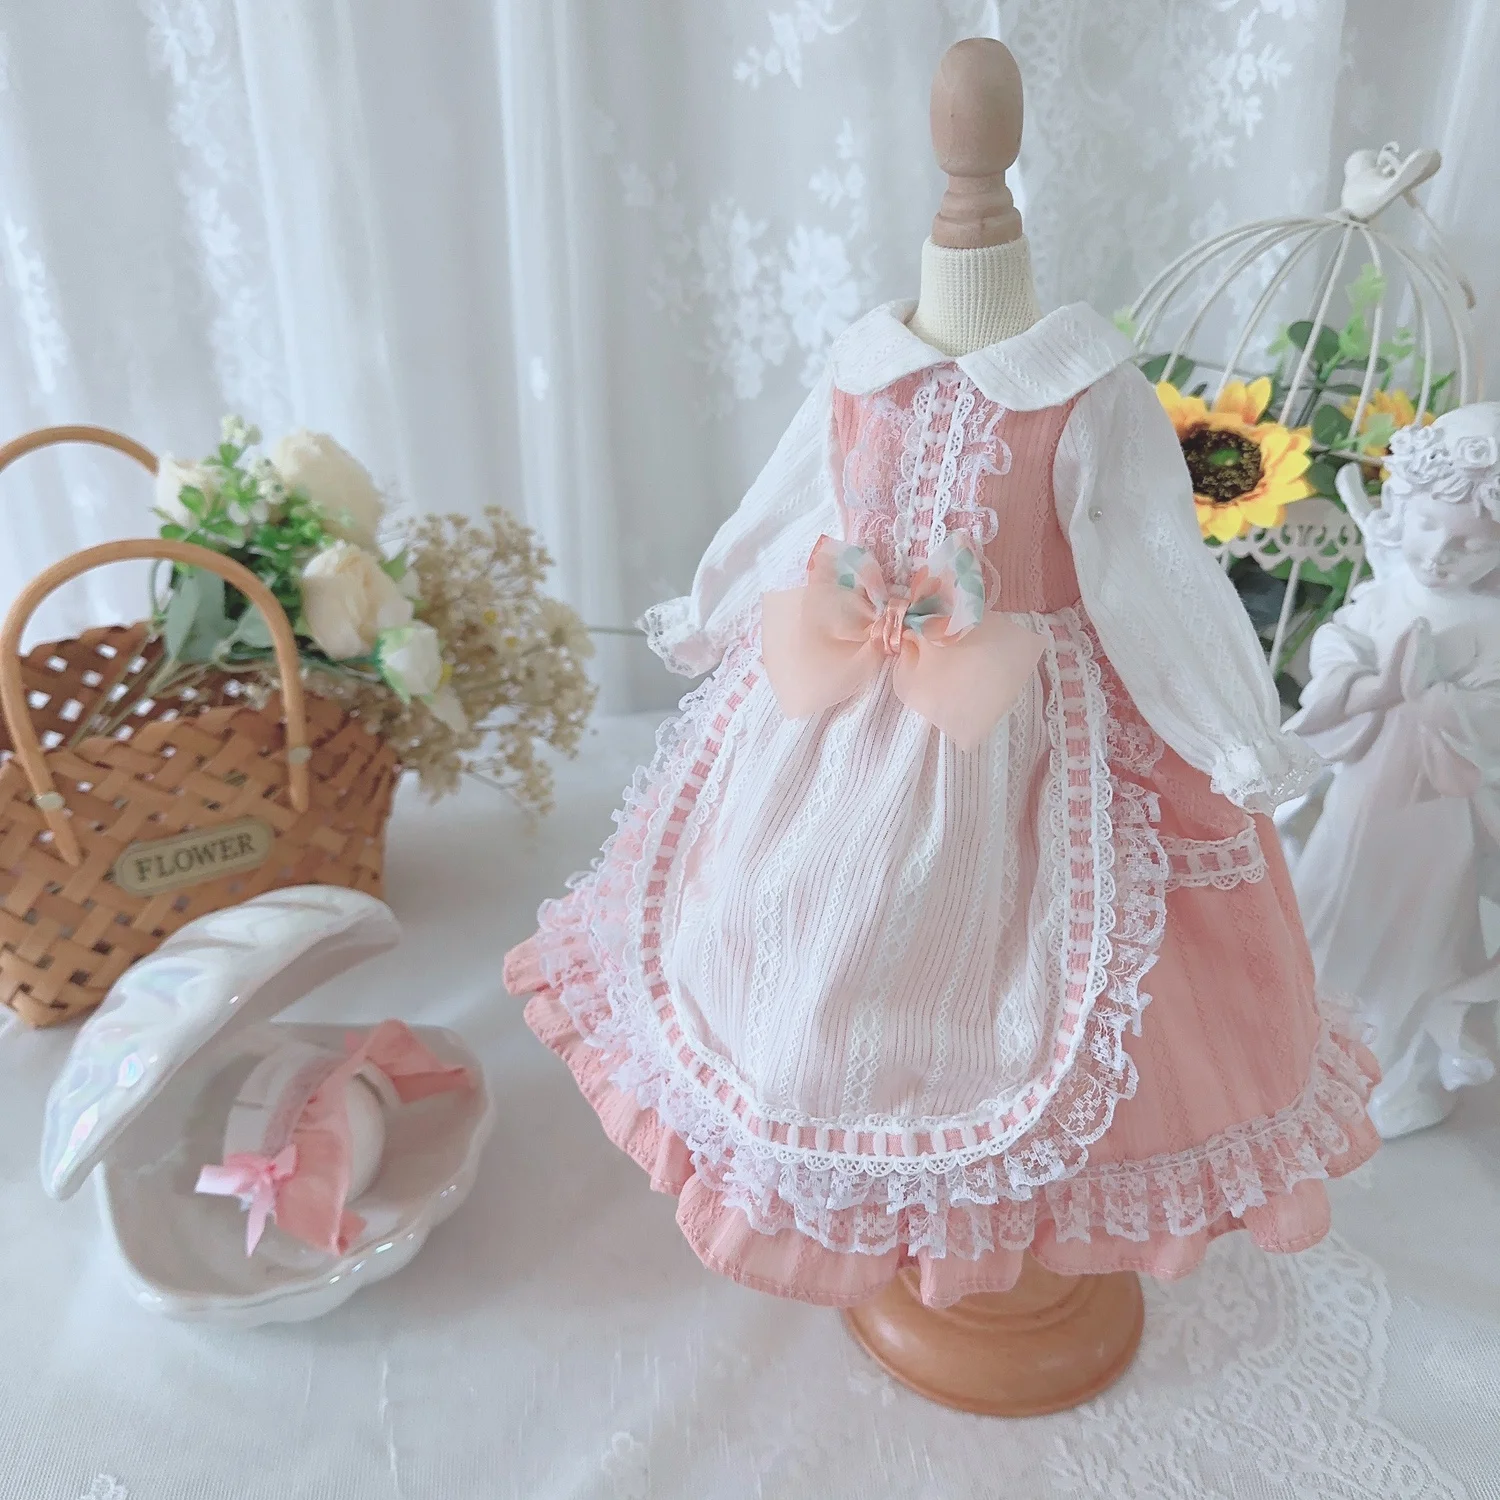 Одежда для куклы BJD, подходящая для размера 1/3 1/4 1/6, розовая юбка с длинными рукавами и бантом, платье в стиле пэчворк, аксессуары для куклы